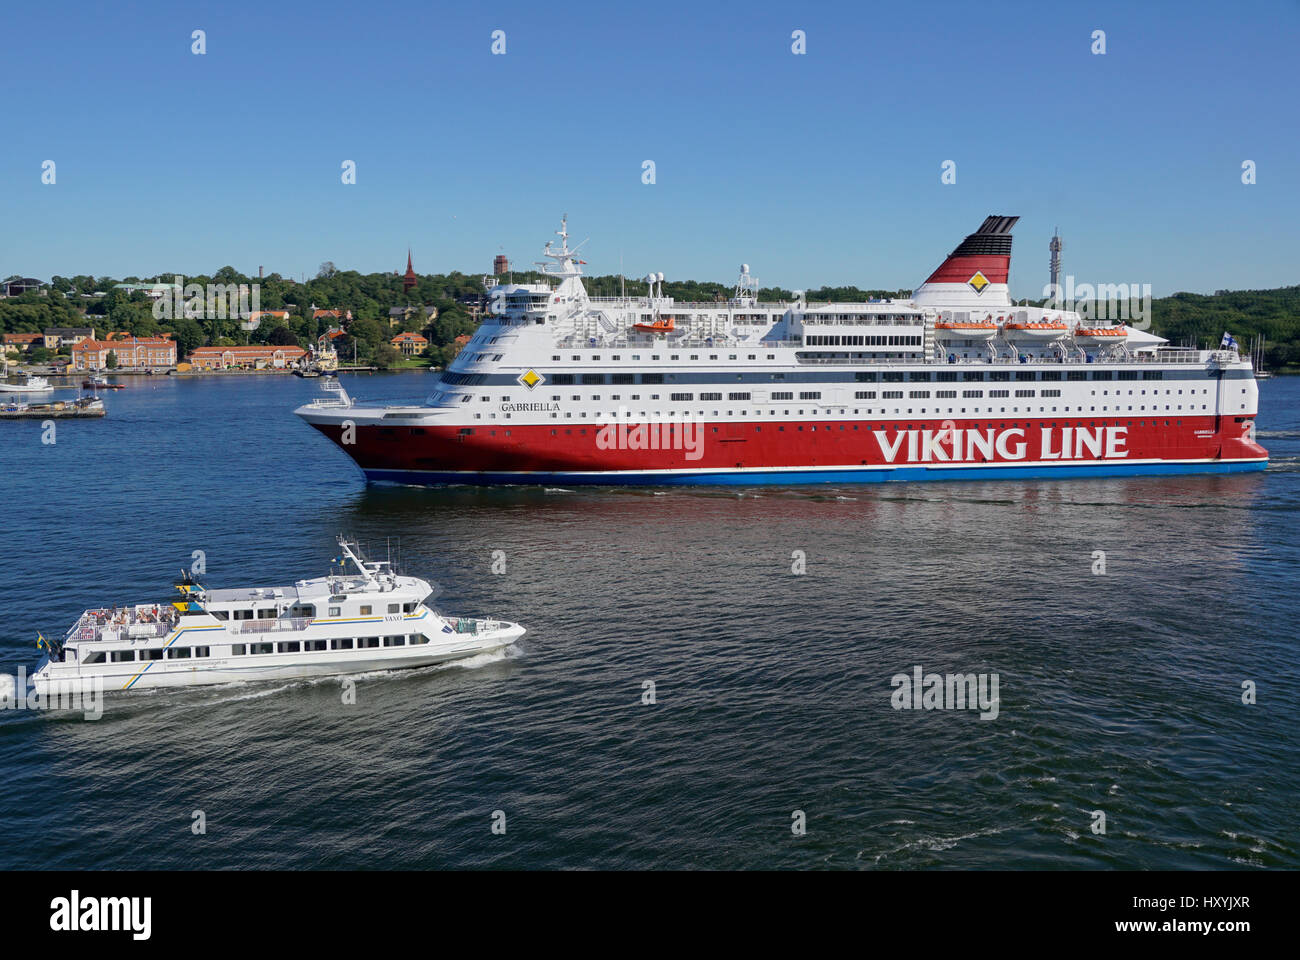 Ferries et autres navires commerciaux lier l'ensemble des pays baltes avec les traditions culturelles toujours en preuve. Banque D'Images